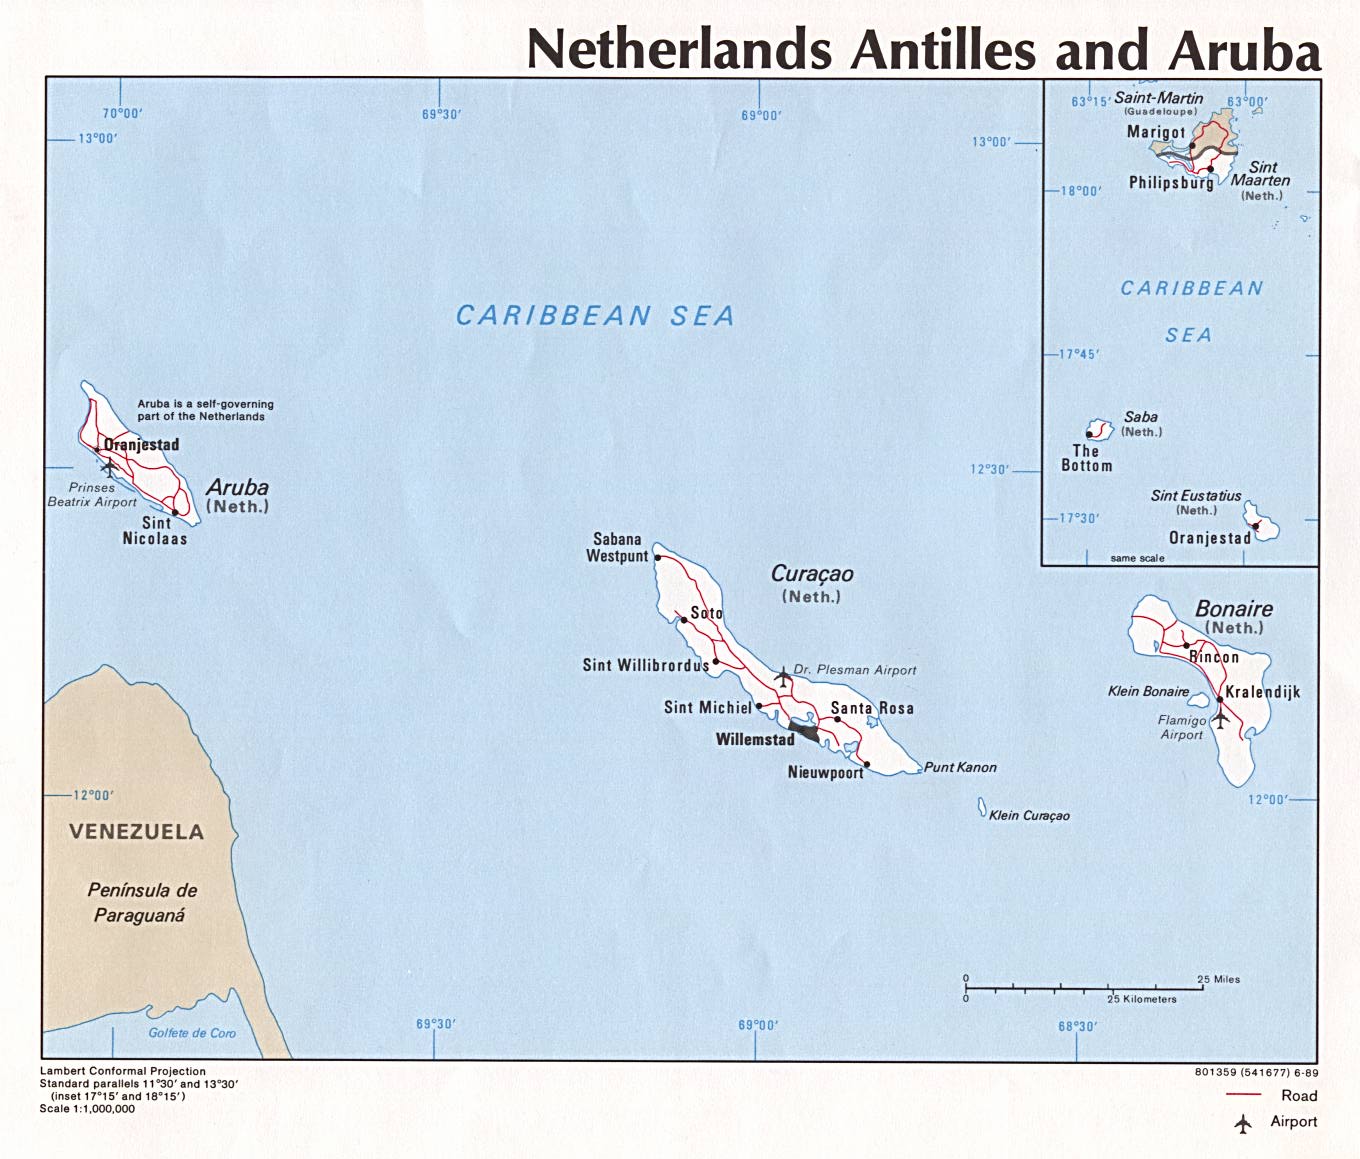 Mapa de las Antillas Holandesas y Aruba